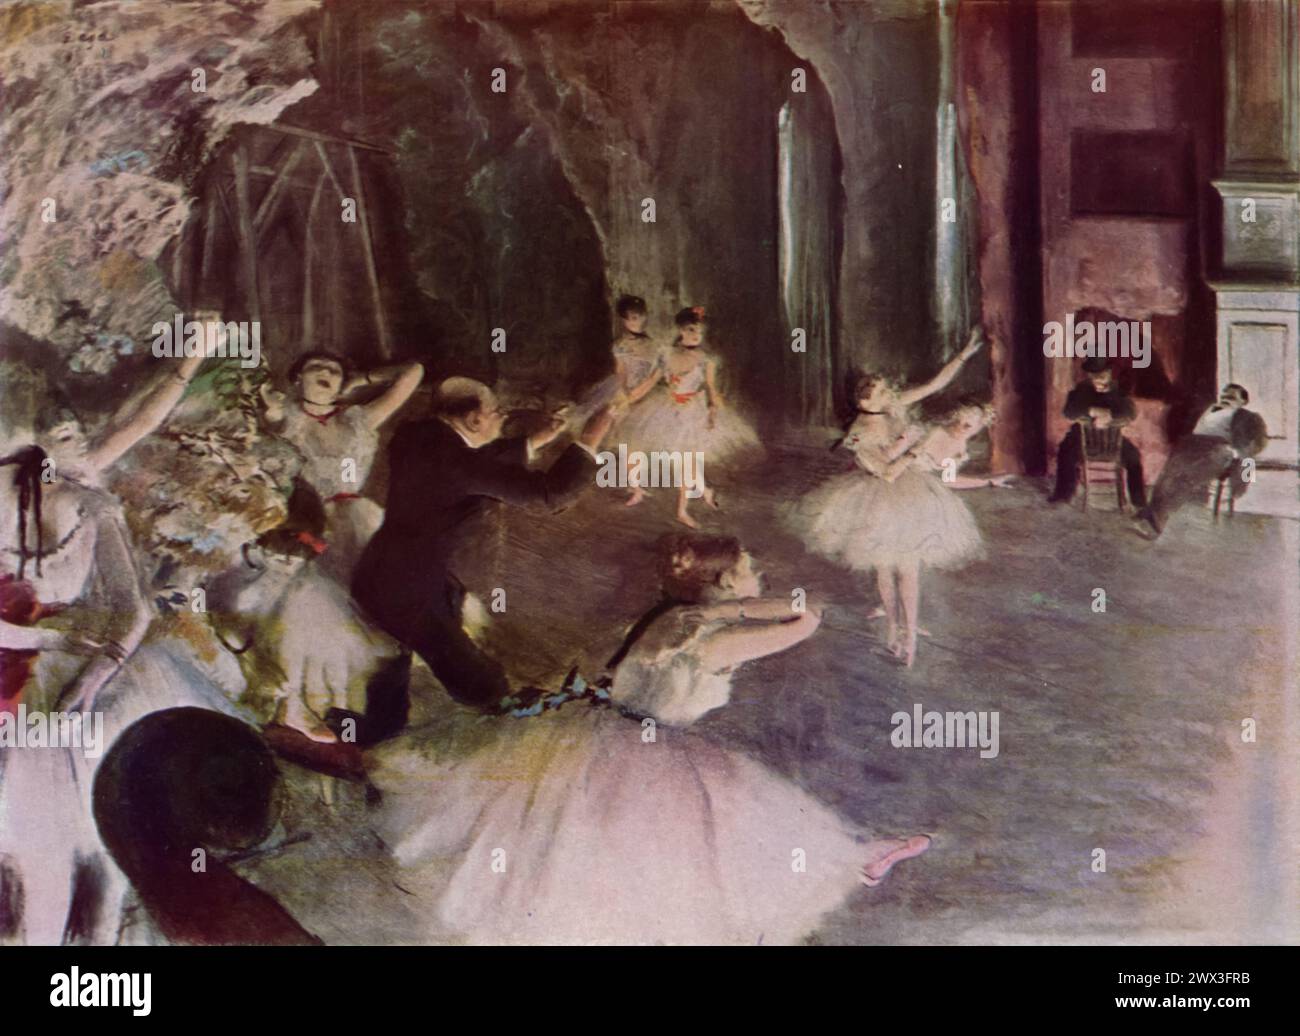 "Rehearsal on the Stage" di Edgar Degas (circa 1874), trovato al Metropolitan Museum of Art di New York, offre uno sguardo intimo in una prova di balletto. Questo lavoro è celebrato per la sua composizione innovativa e per il modo in cui cattura la luce e l'energia del momento, segnando un significativo contributo al movimento impressionista. Foto Stock